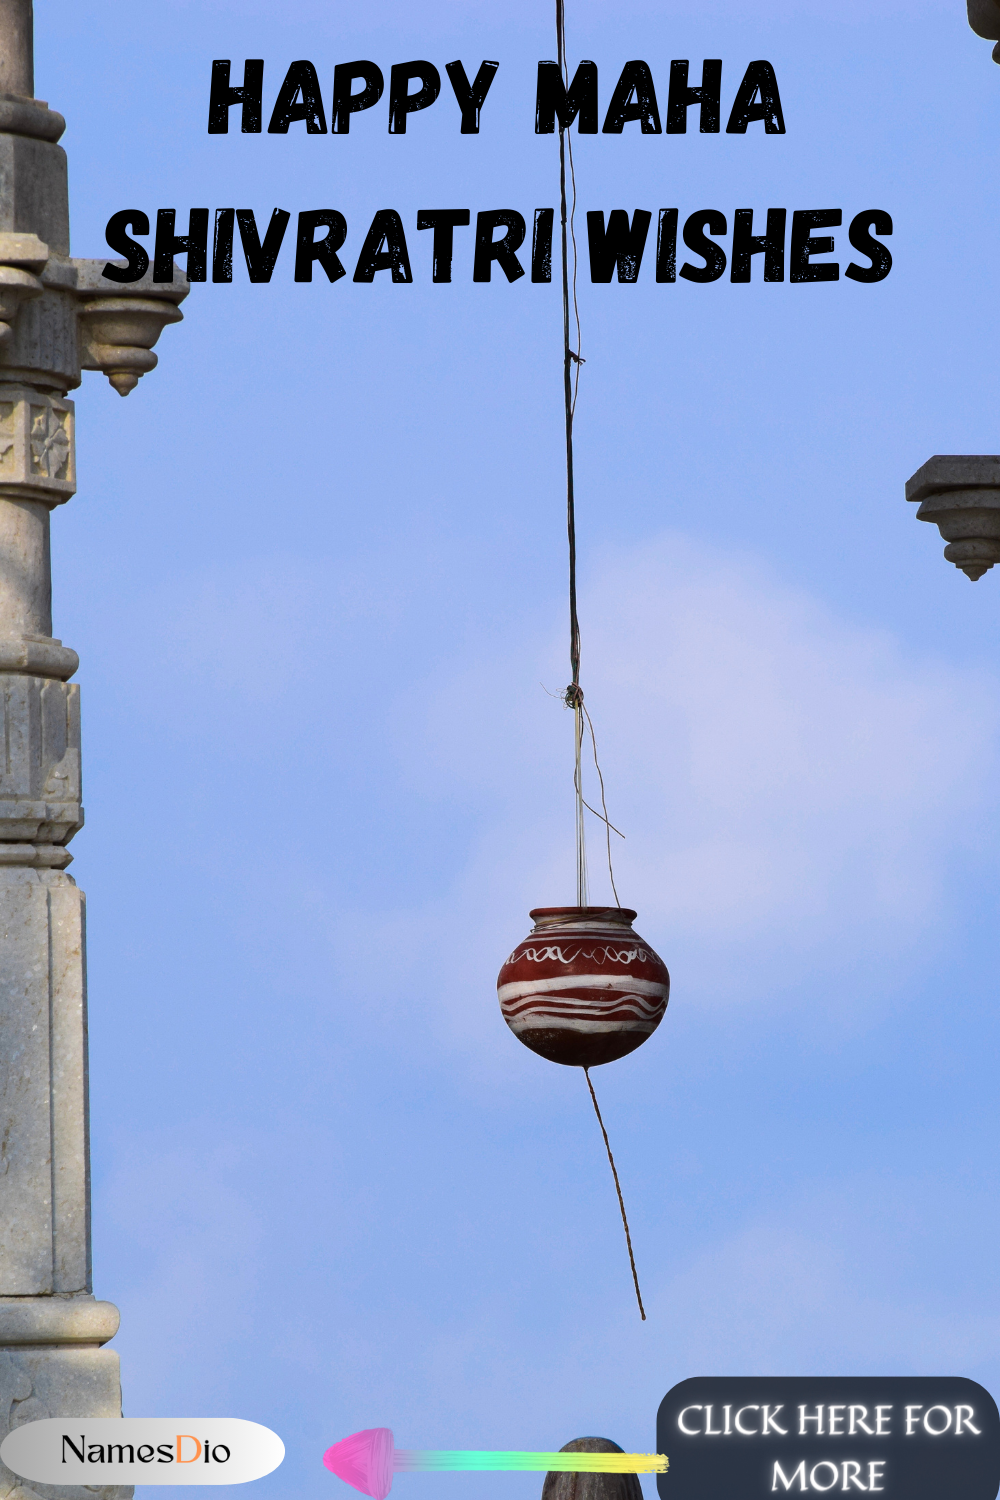 Happy-Maha-Shivratri-Wishes